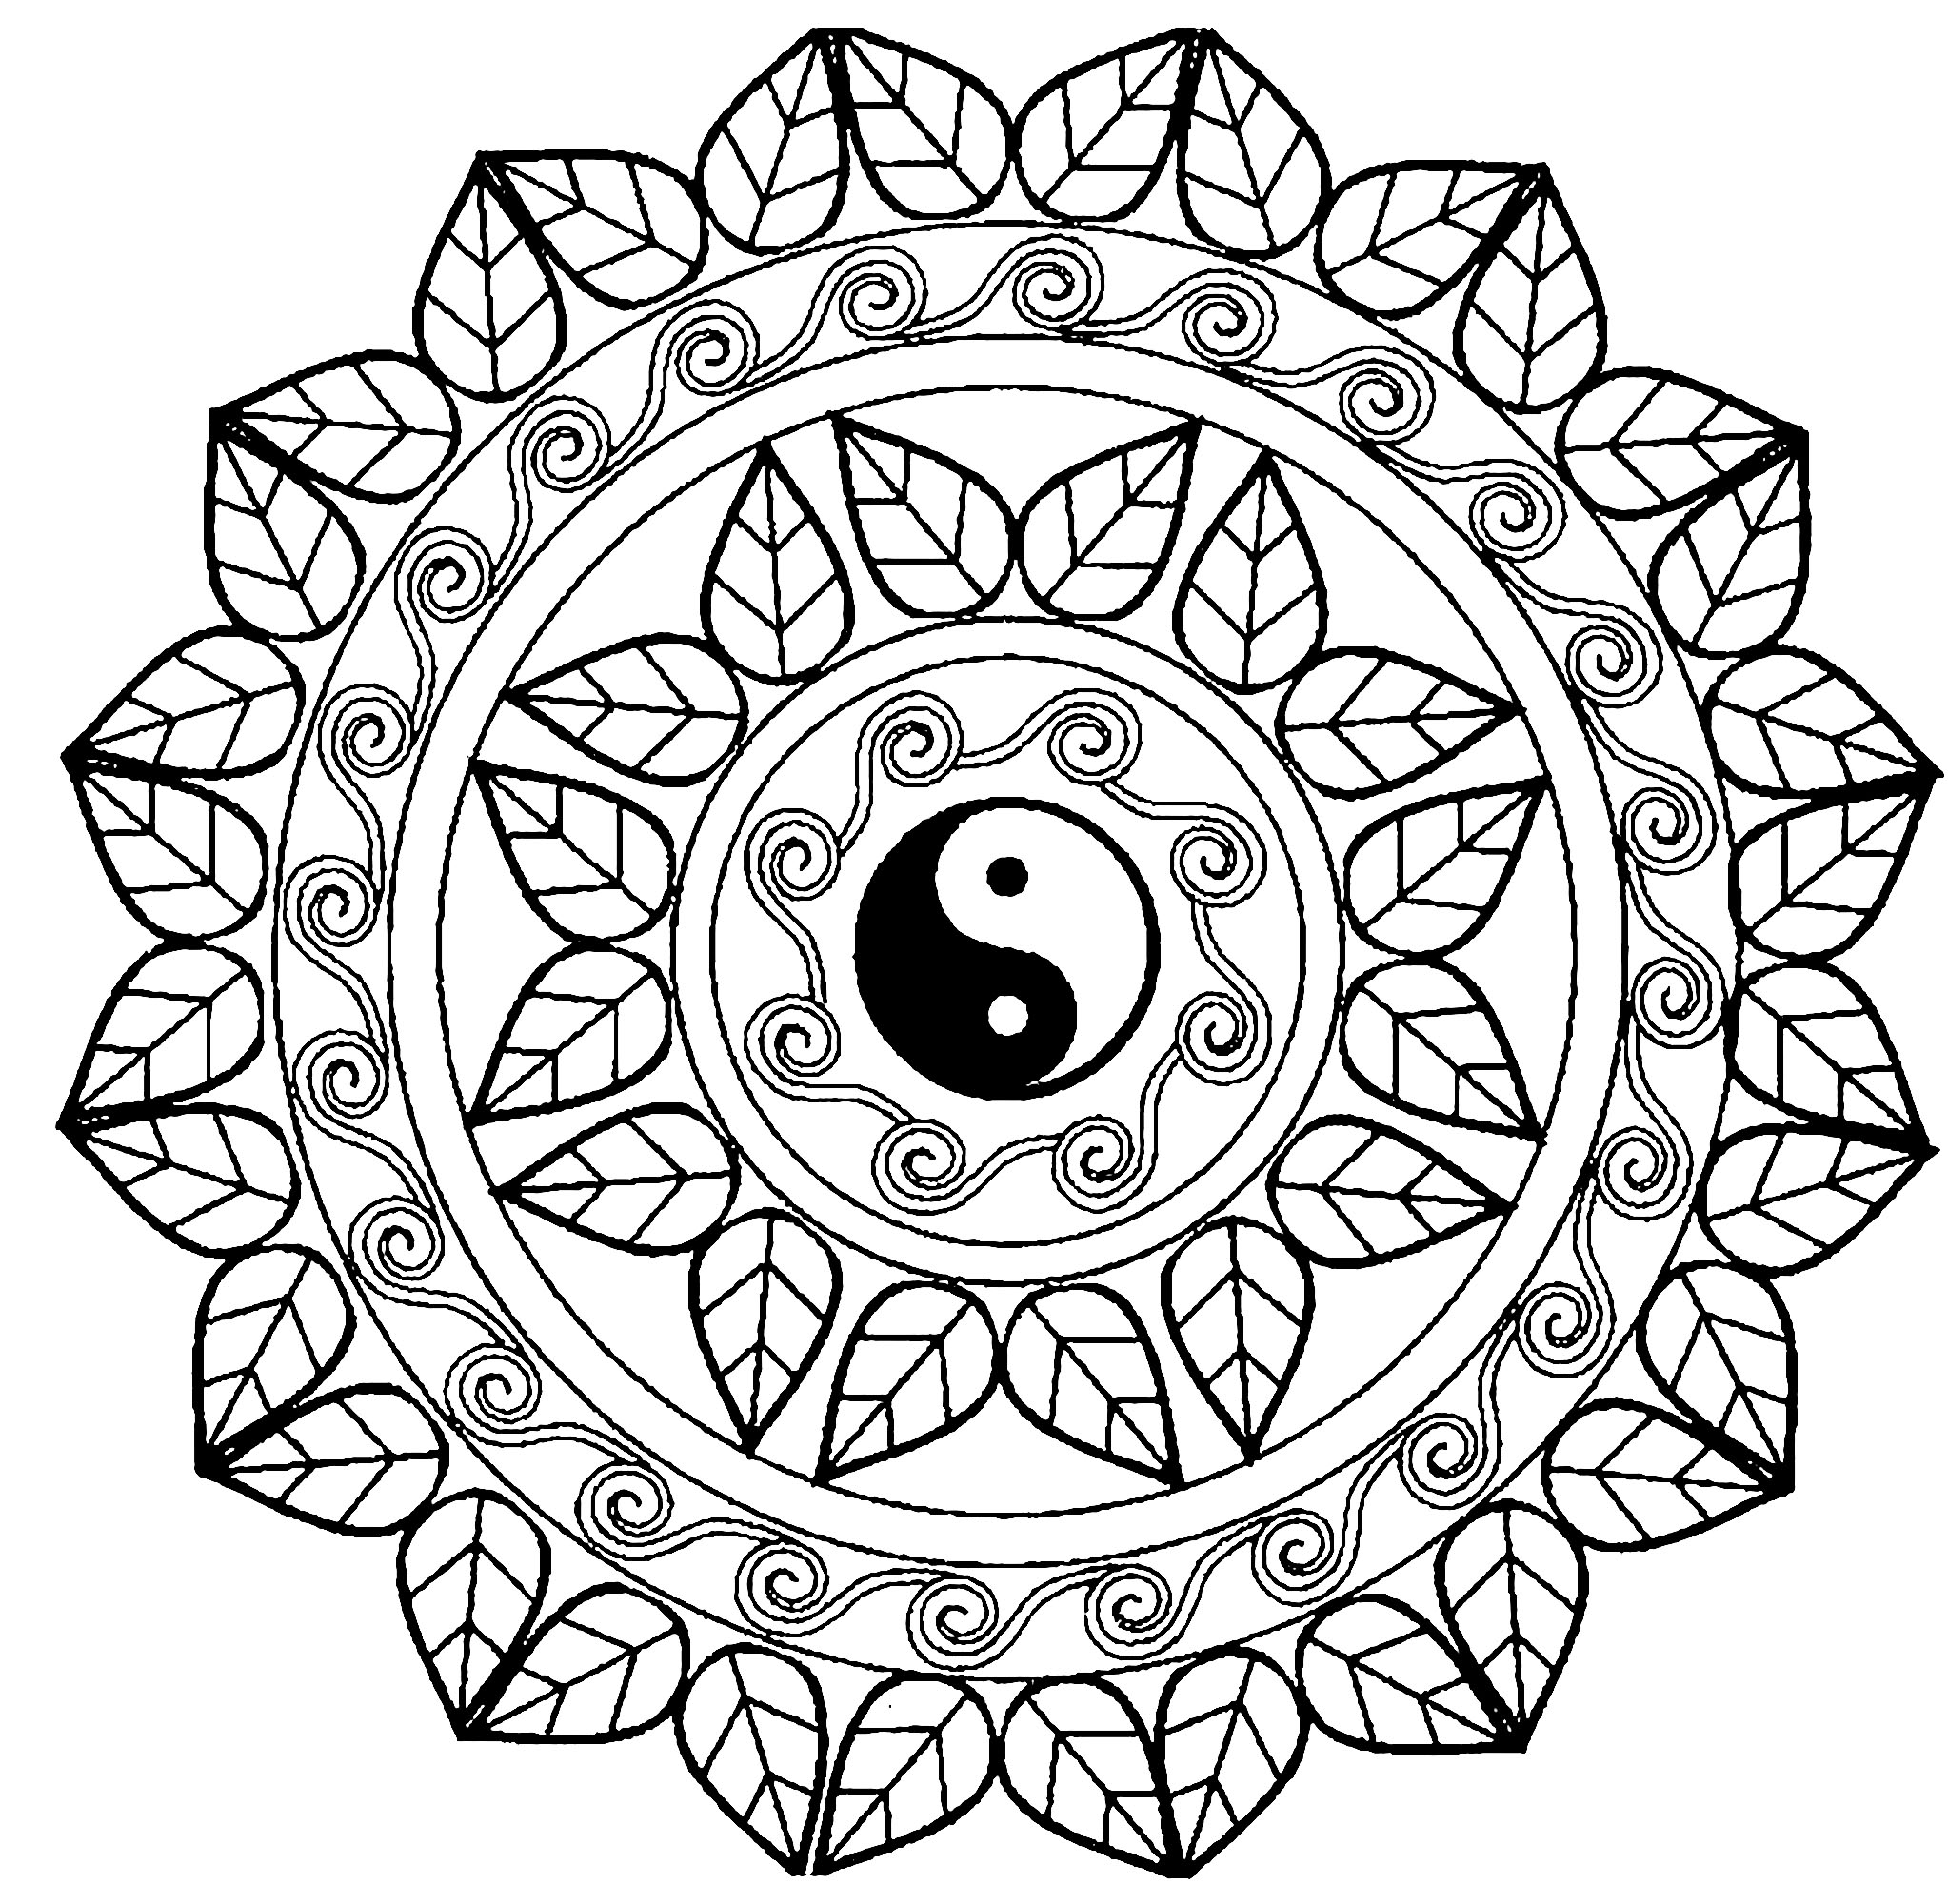 Mandala Coloring Pages For Adults Mandala Yin Yang Malas Adult Coloring Pages